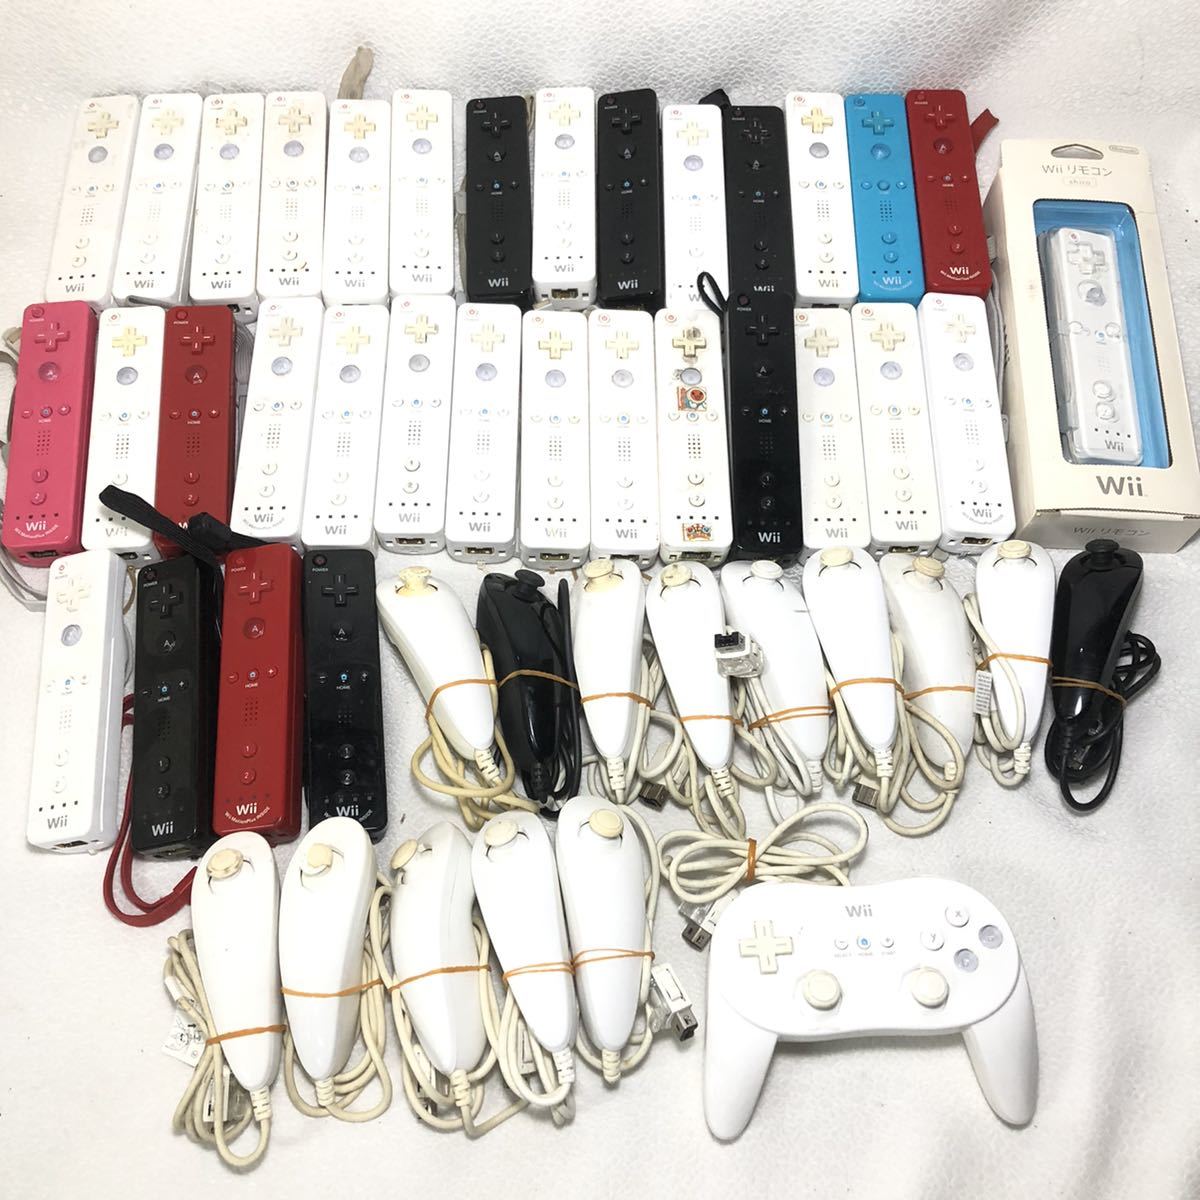 します 任天堂 Wii ヌンチャク コントローラー 周辺機器 VL-004 約400個 未チェック まとめ売り 大量 ジャンク【z4-334/0/0】  けできませ